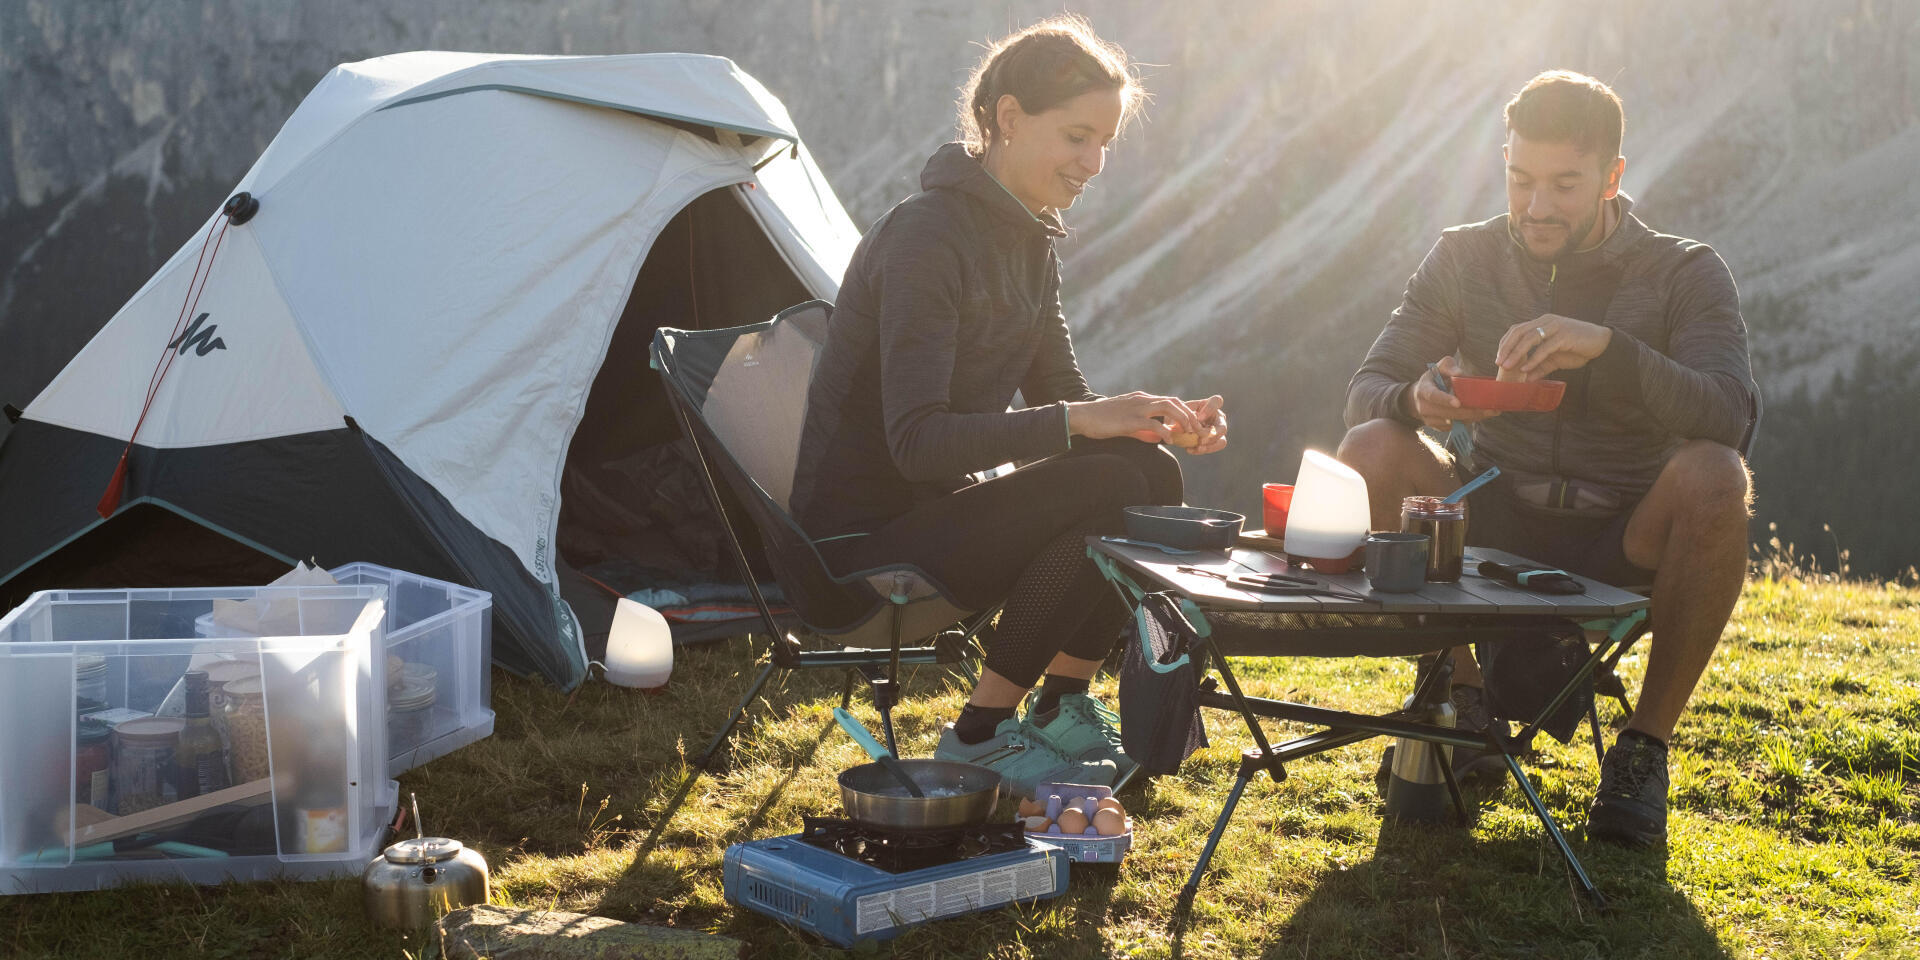 Ghid de camping pentru începători – pregătire, echipament necesar, măsuri de siguranță